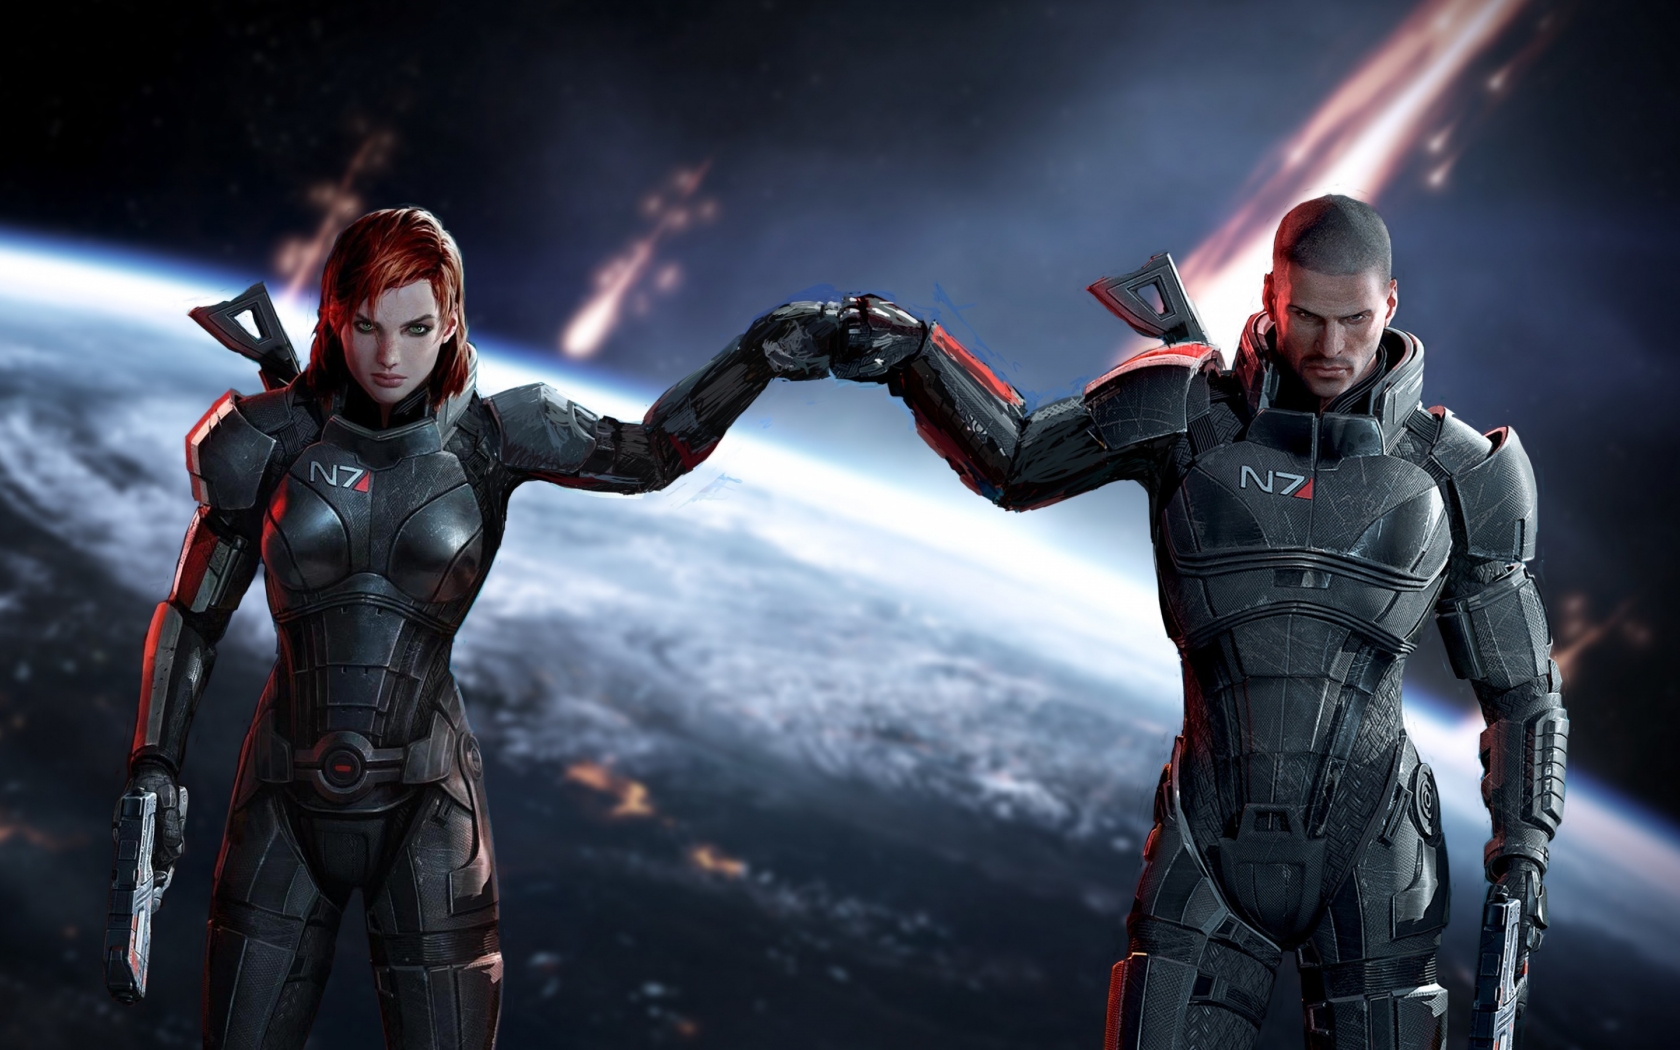 Mass Effect Jane and John Shepard for 1680 x 1050 widescreen resolution